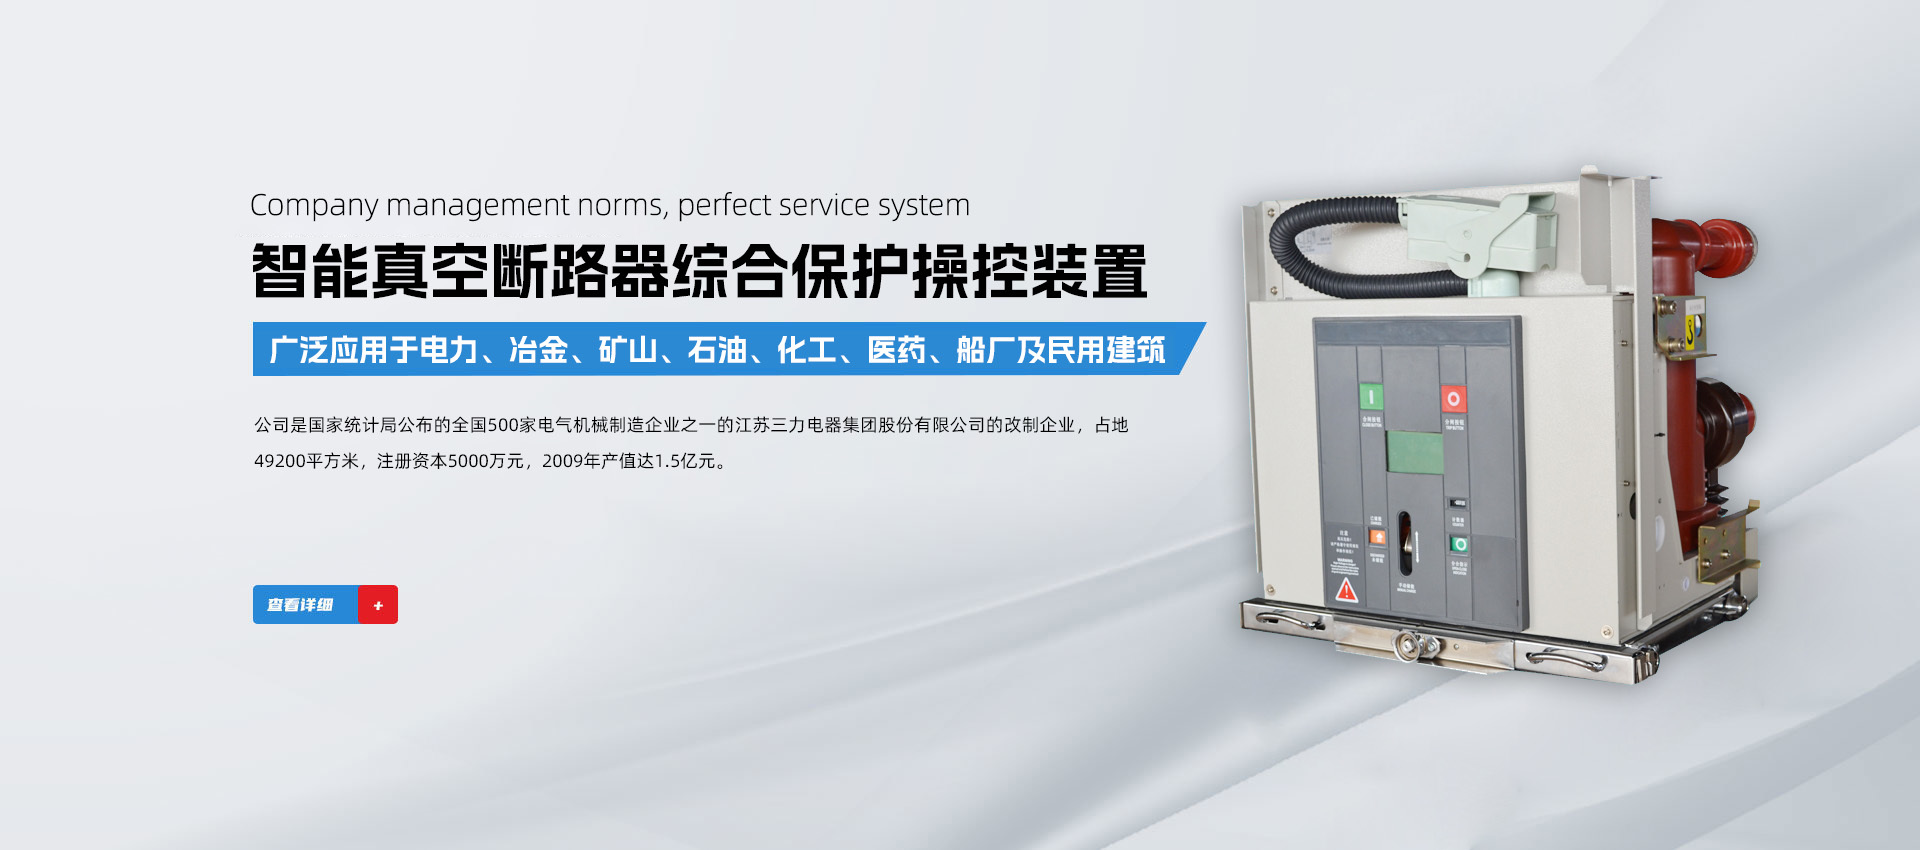 扬州万能科技发展有限公司_高低压电控设备,万能科技,电气元件